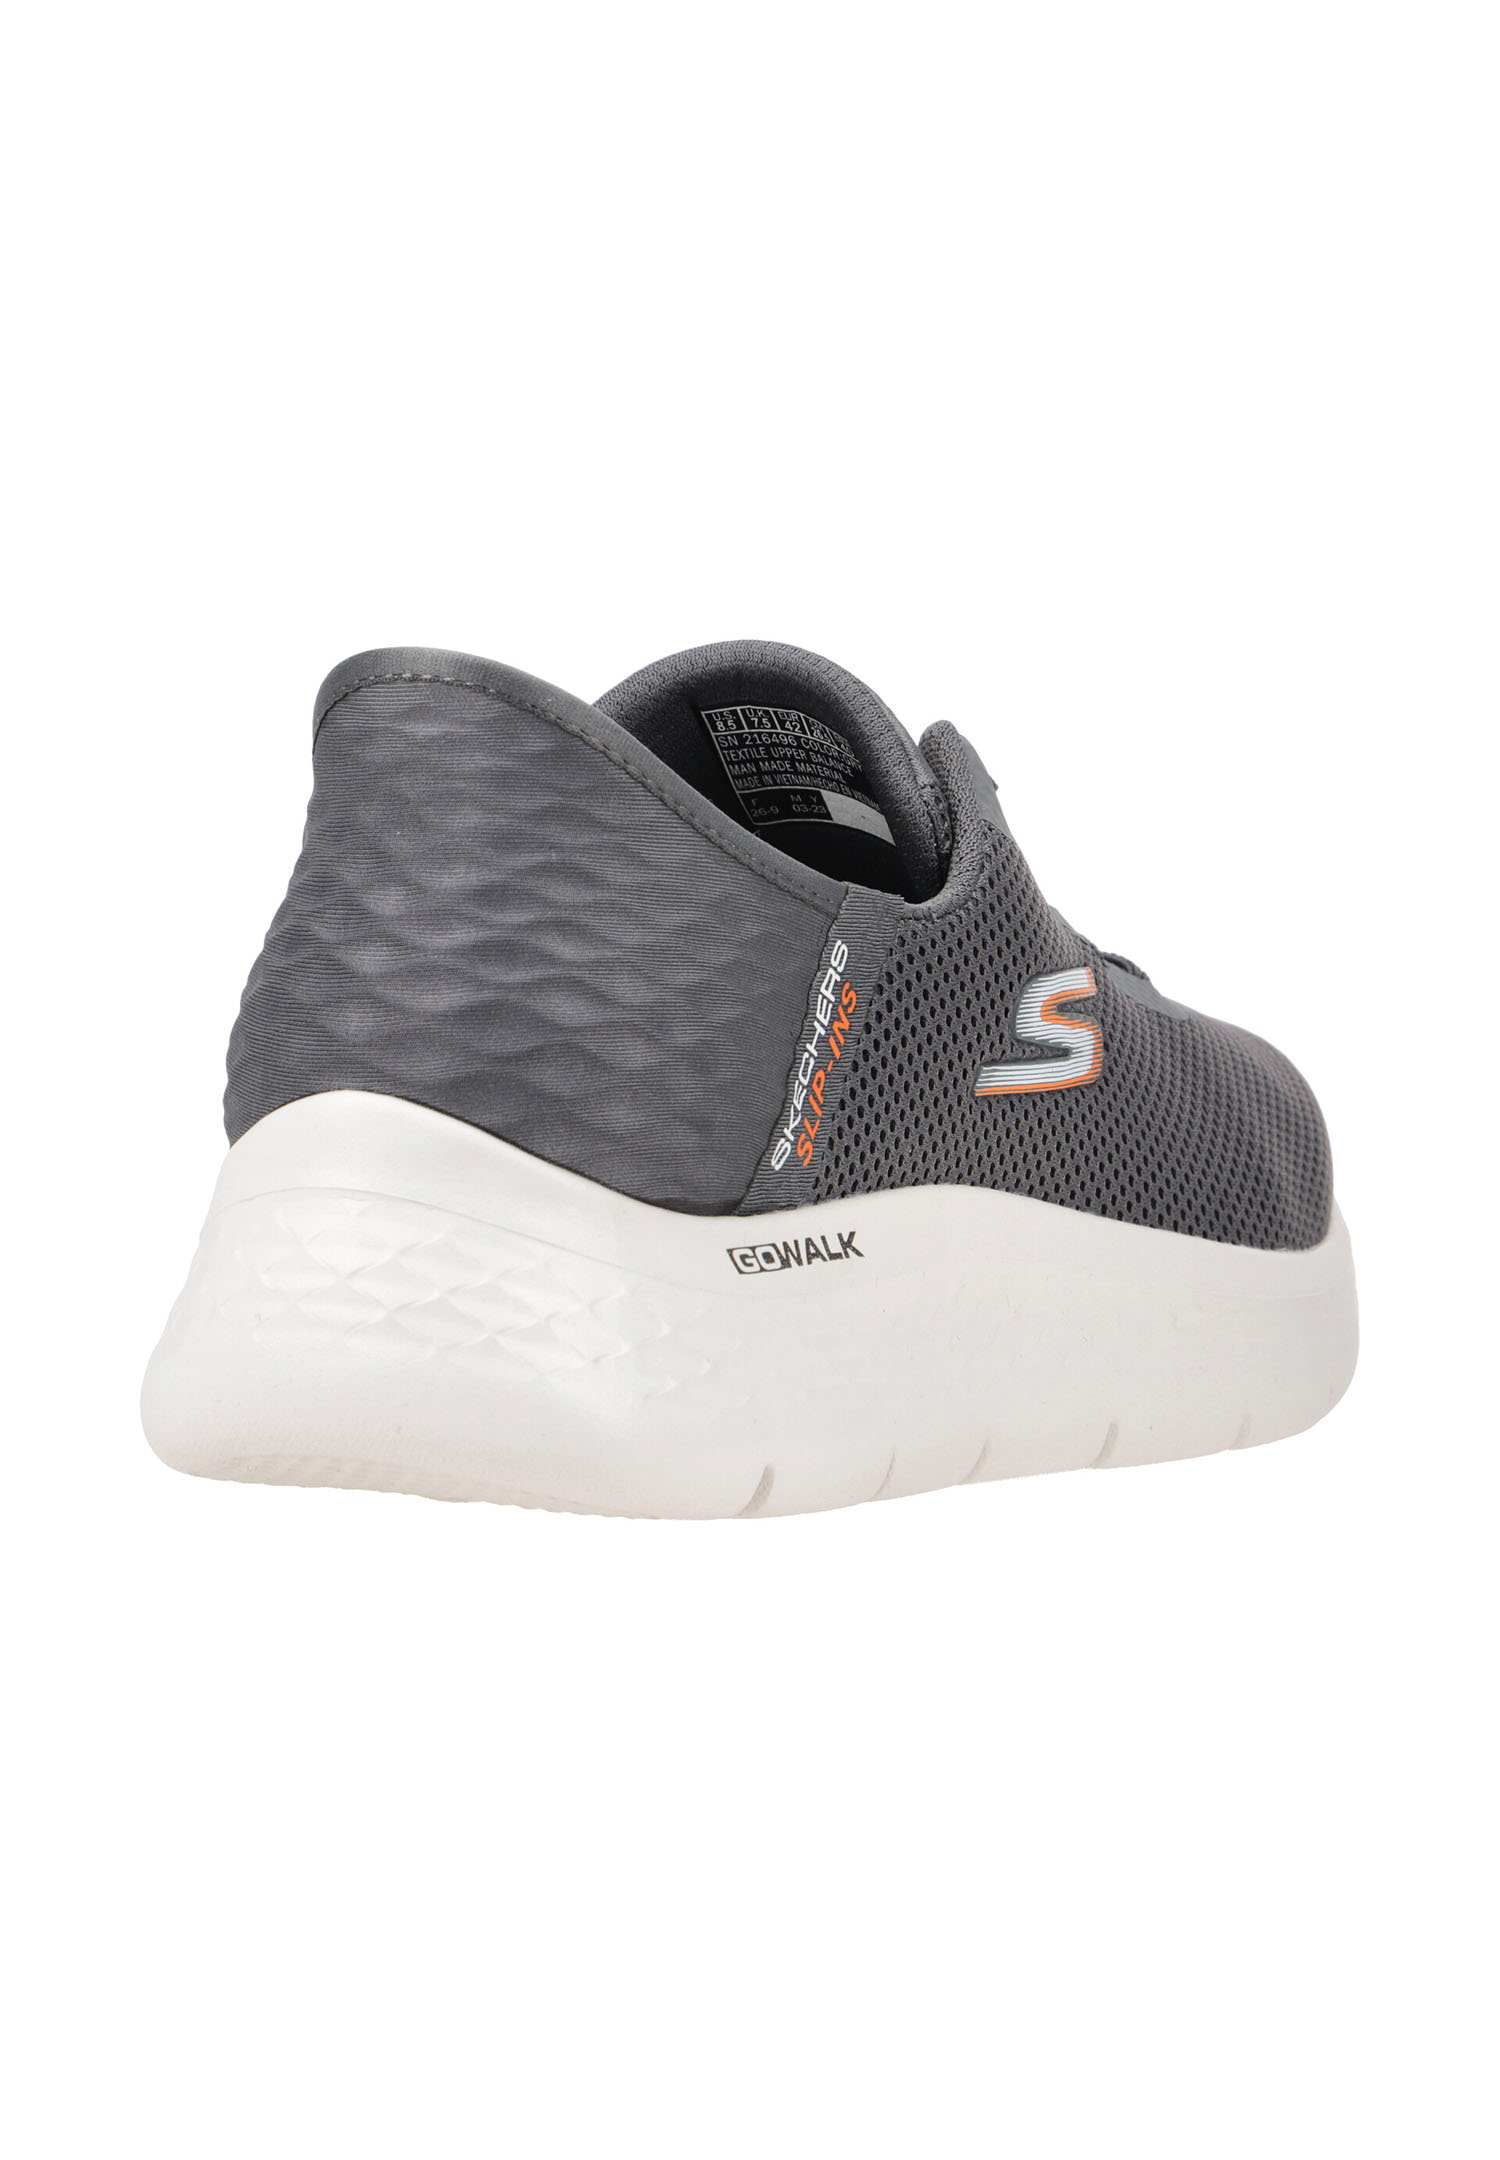 Skechers Go Walk Flex HANDS UP Herren Sneakers Slip in 216496 grau